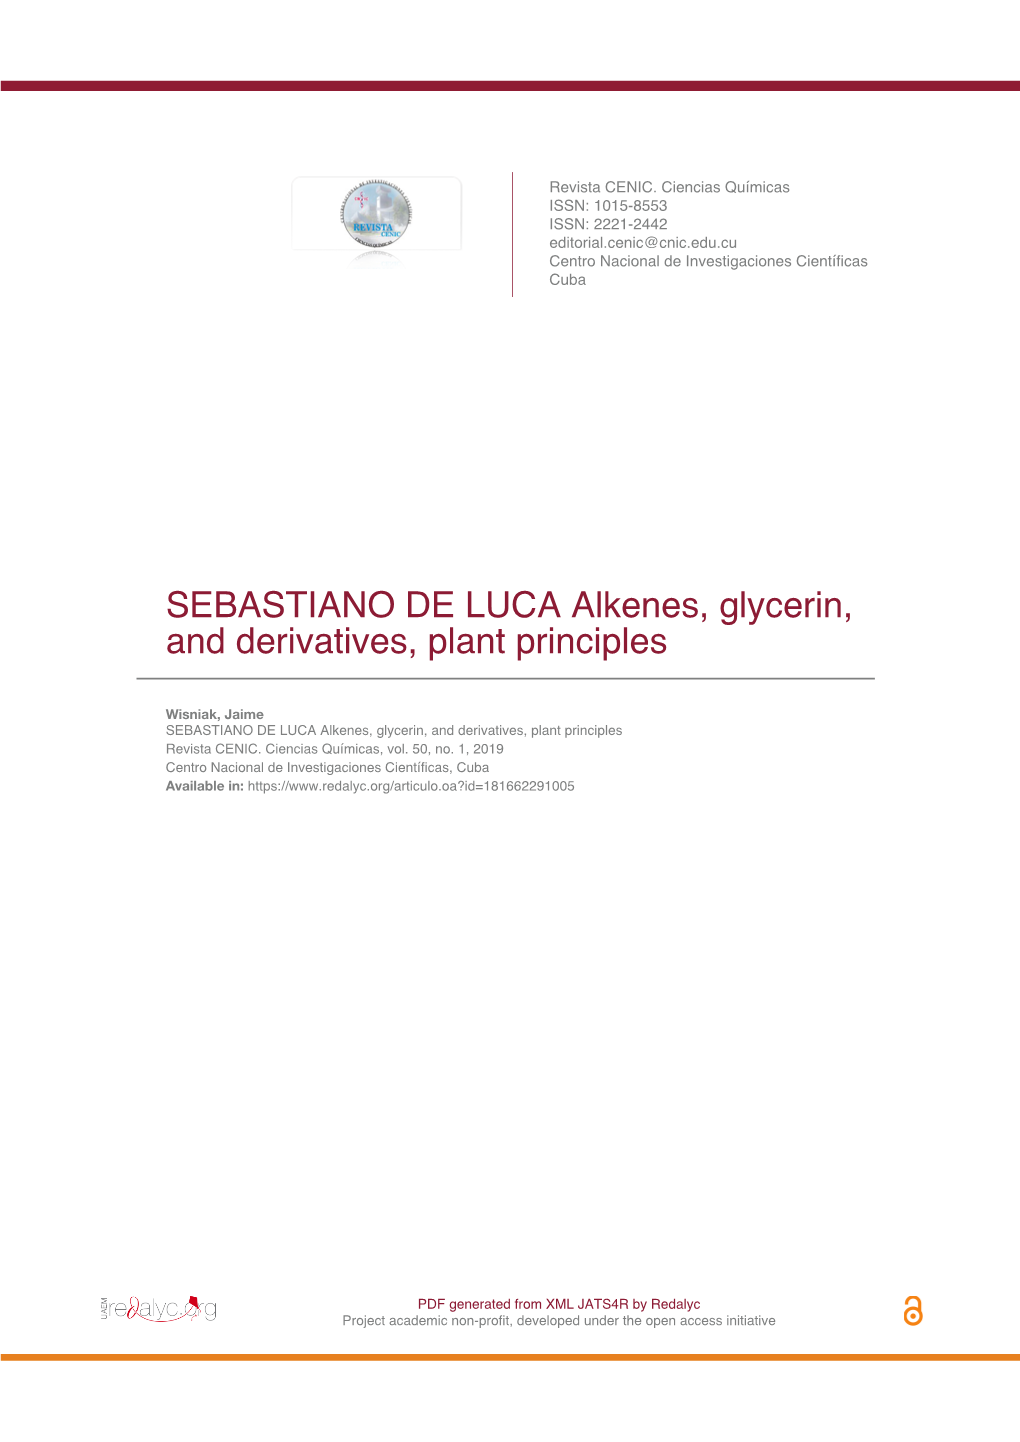 SEBASTIANO DE LUCA Alkenes, Glycerin, and Derivatives, Plant Principles